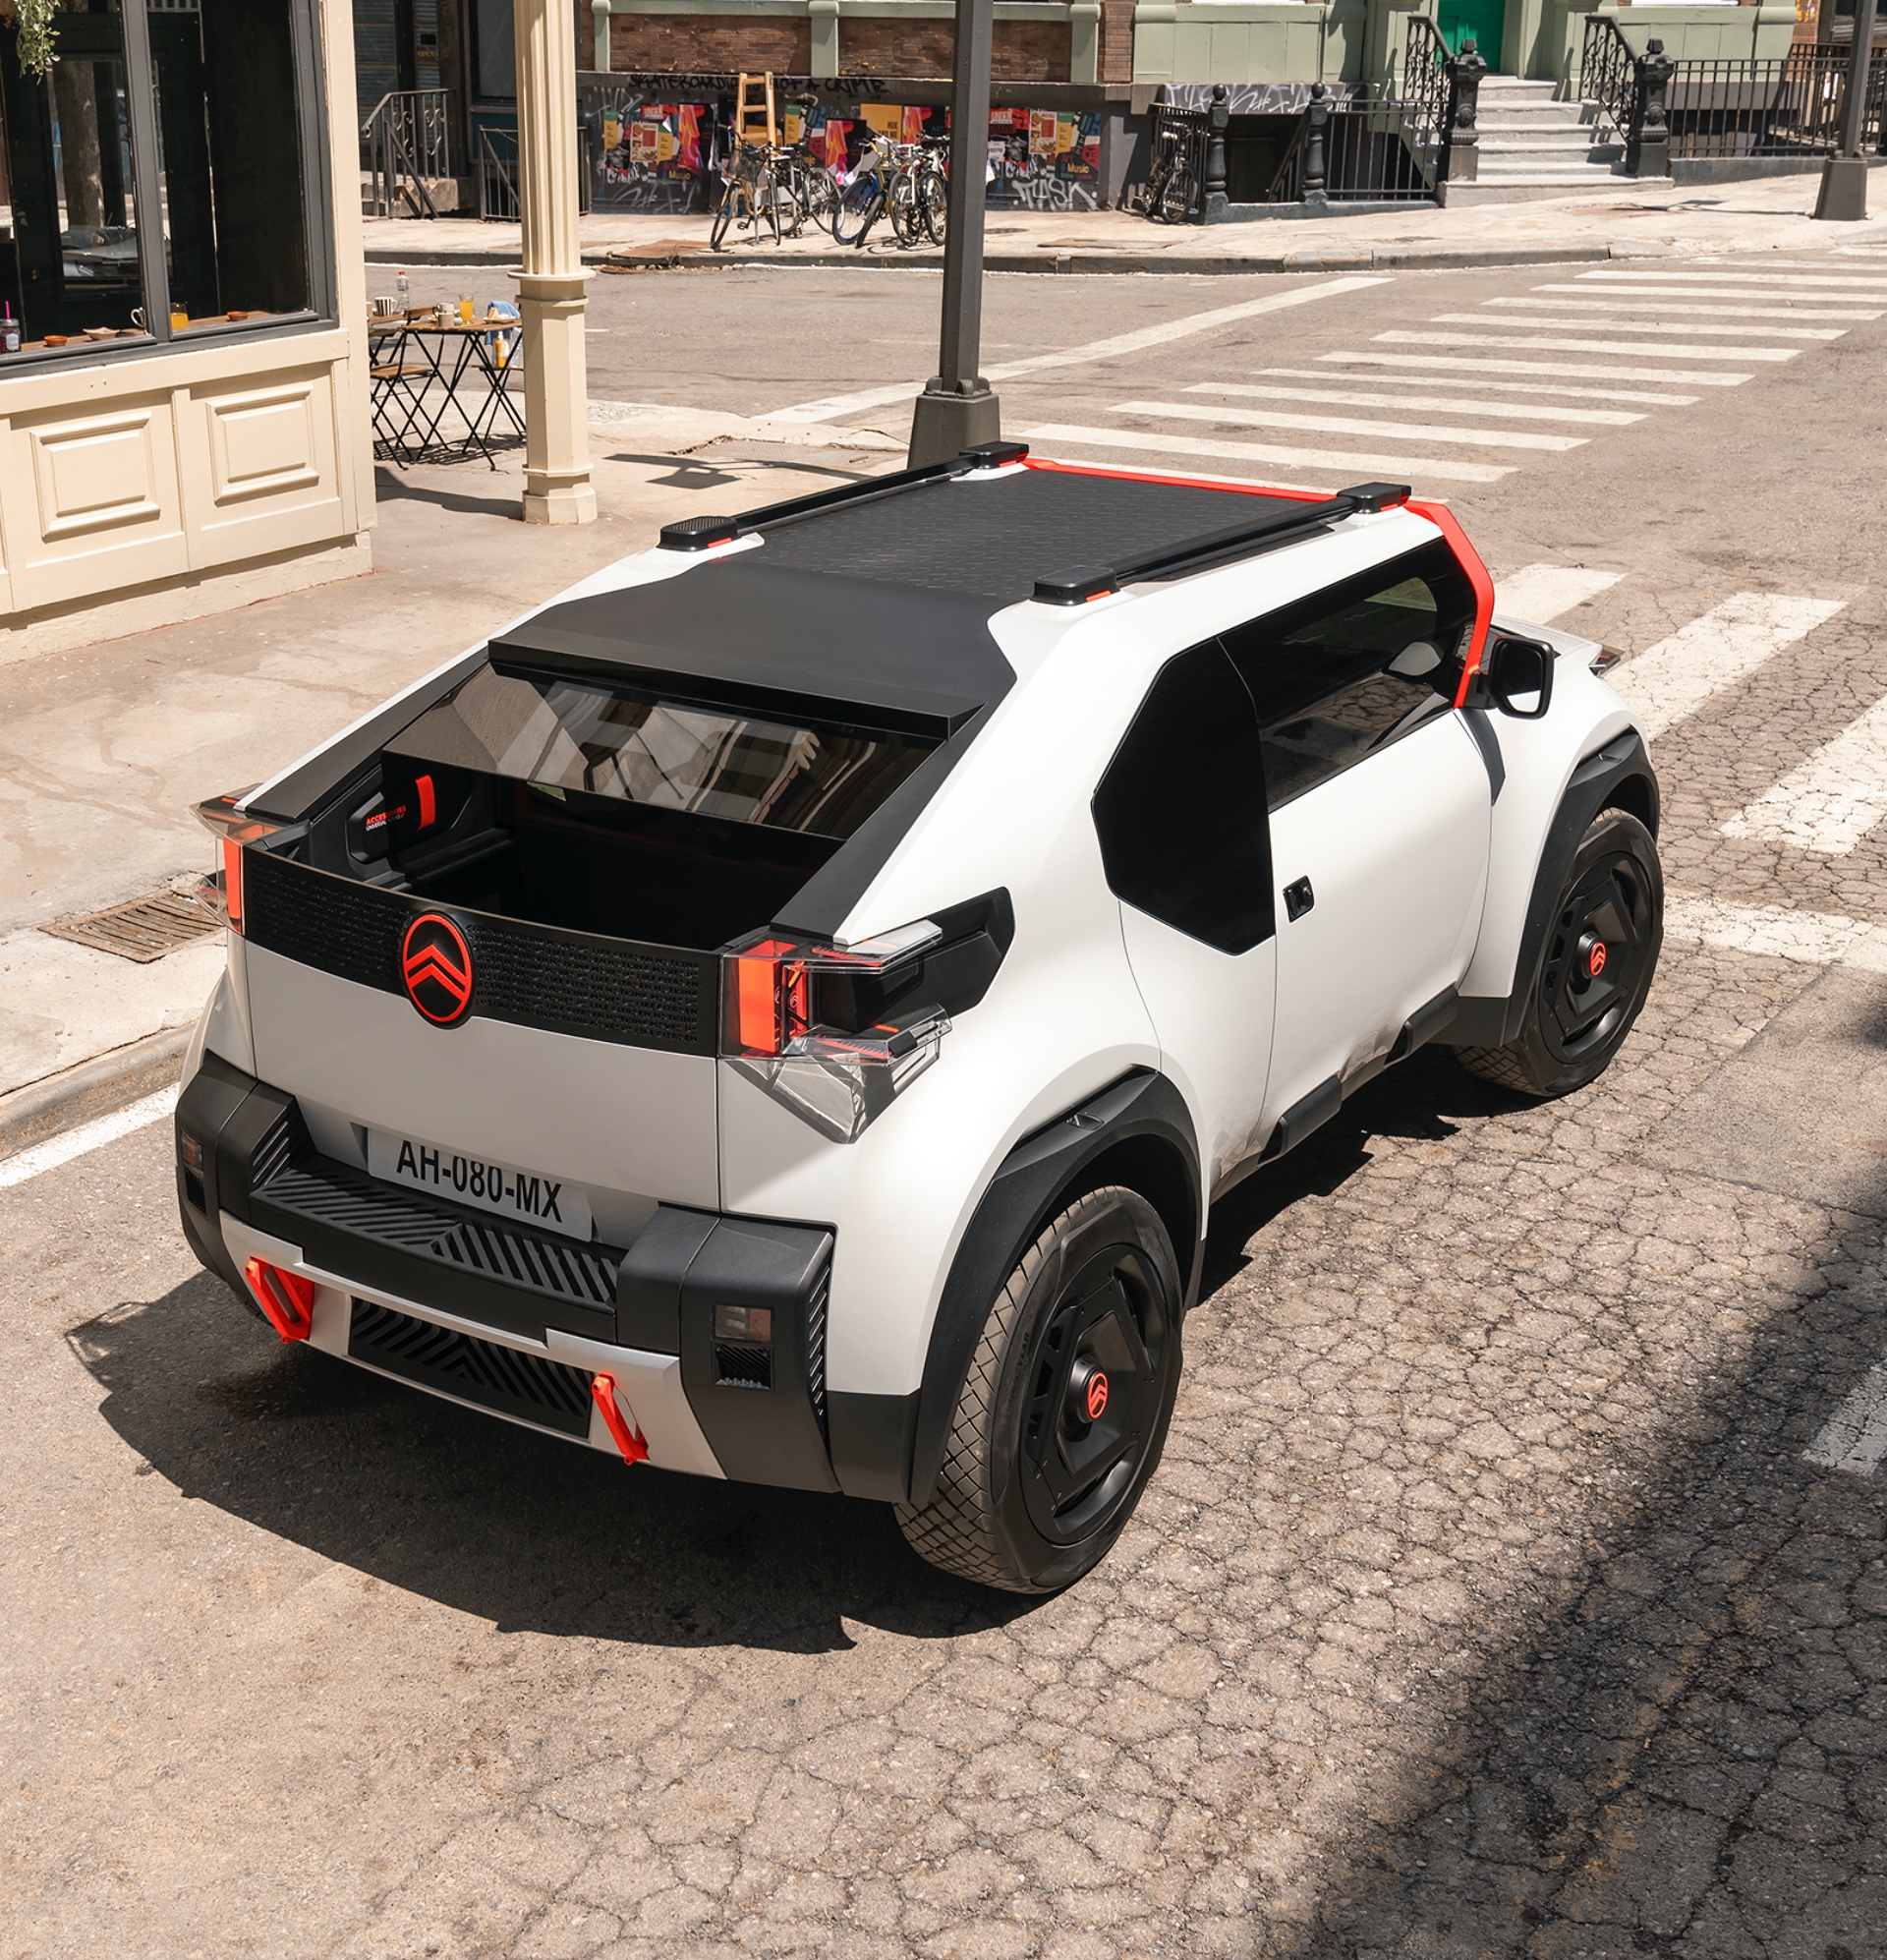 Citroën Oli eléctrico, un modelo conceptual que no llegará a producción.